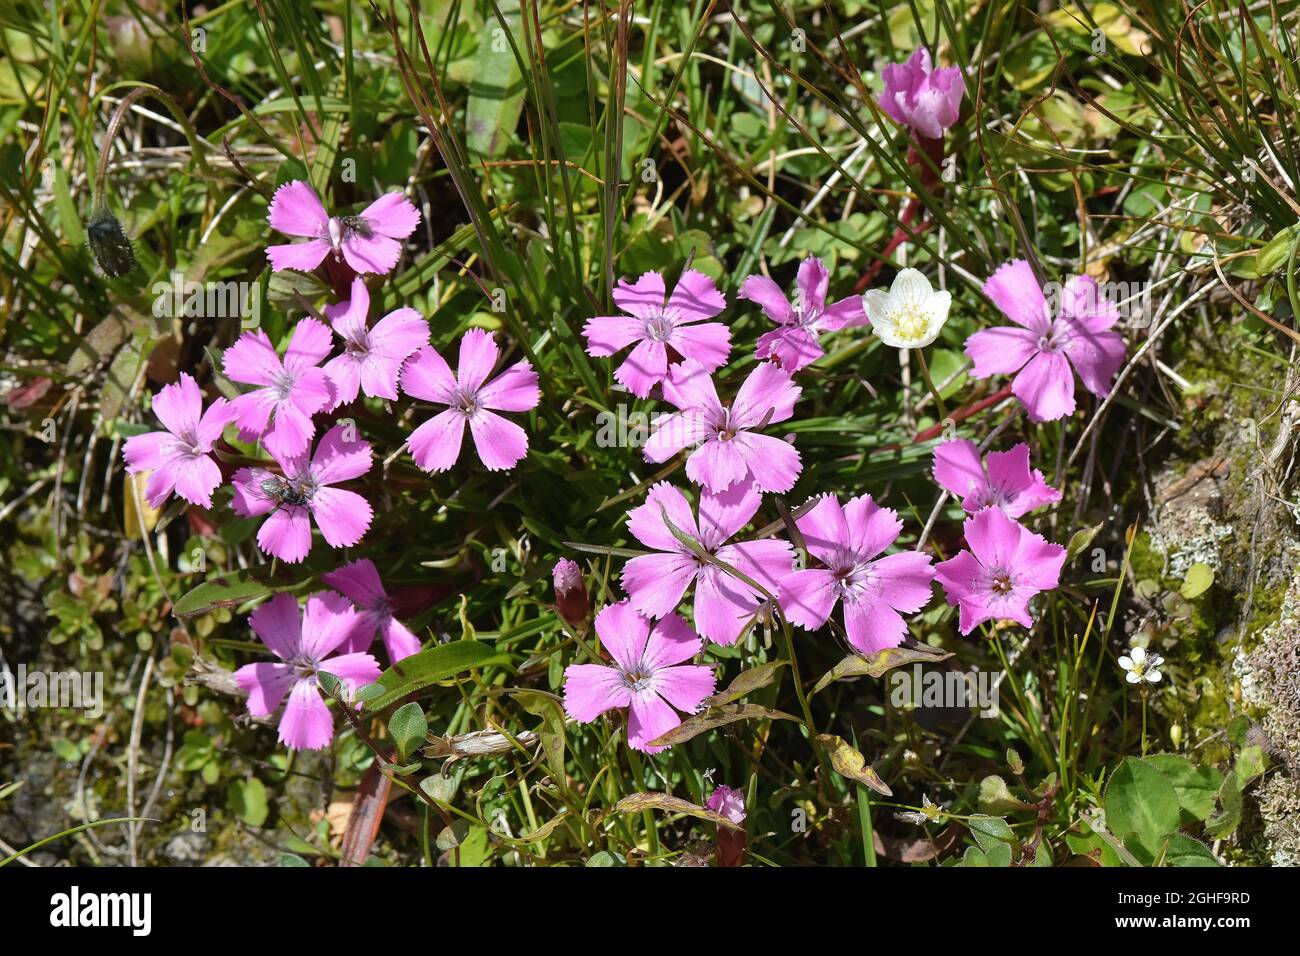 alpine pink, Alpen-Nelke, Ostalpen-Nelke, Dianthus alpinus, havasi szegfű, Austria, Europe Stock Photo